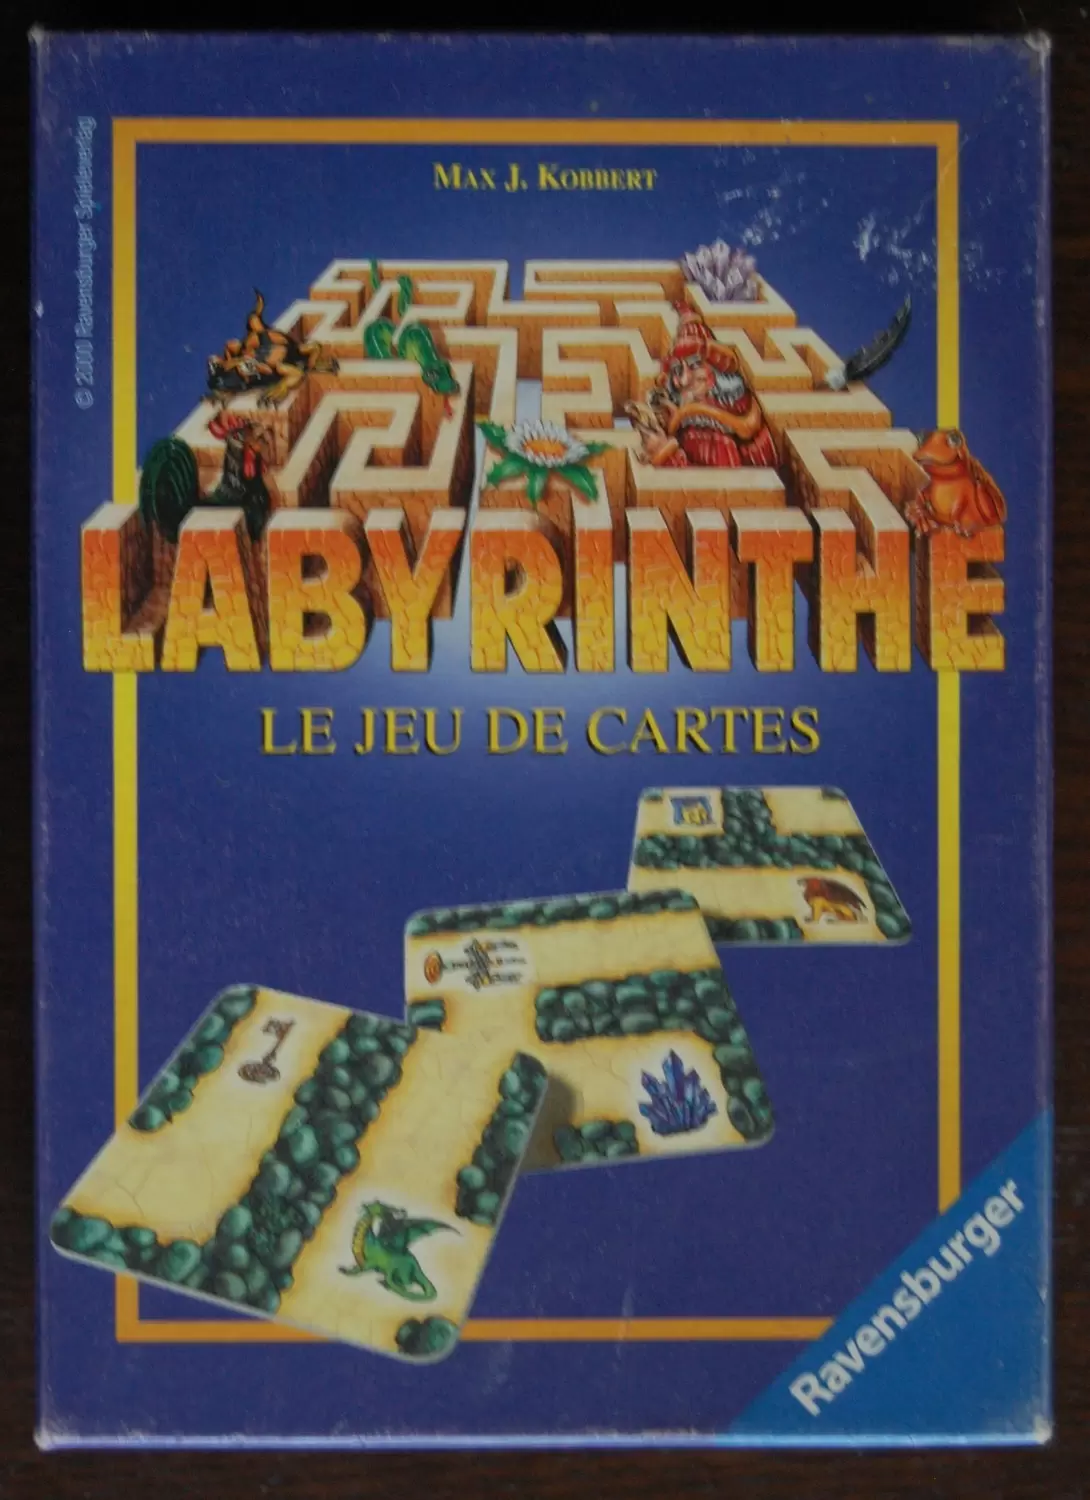 Labyrinthe - Labyrinthe - Le jeu de cartes